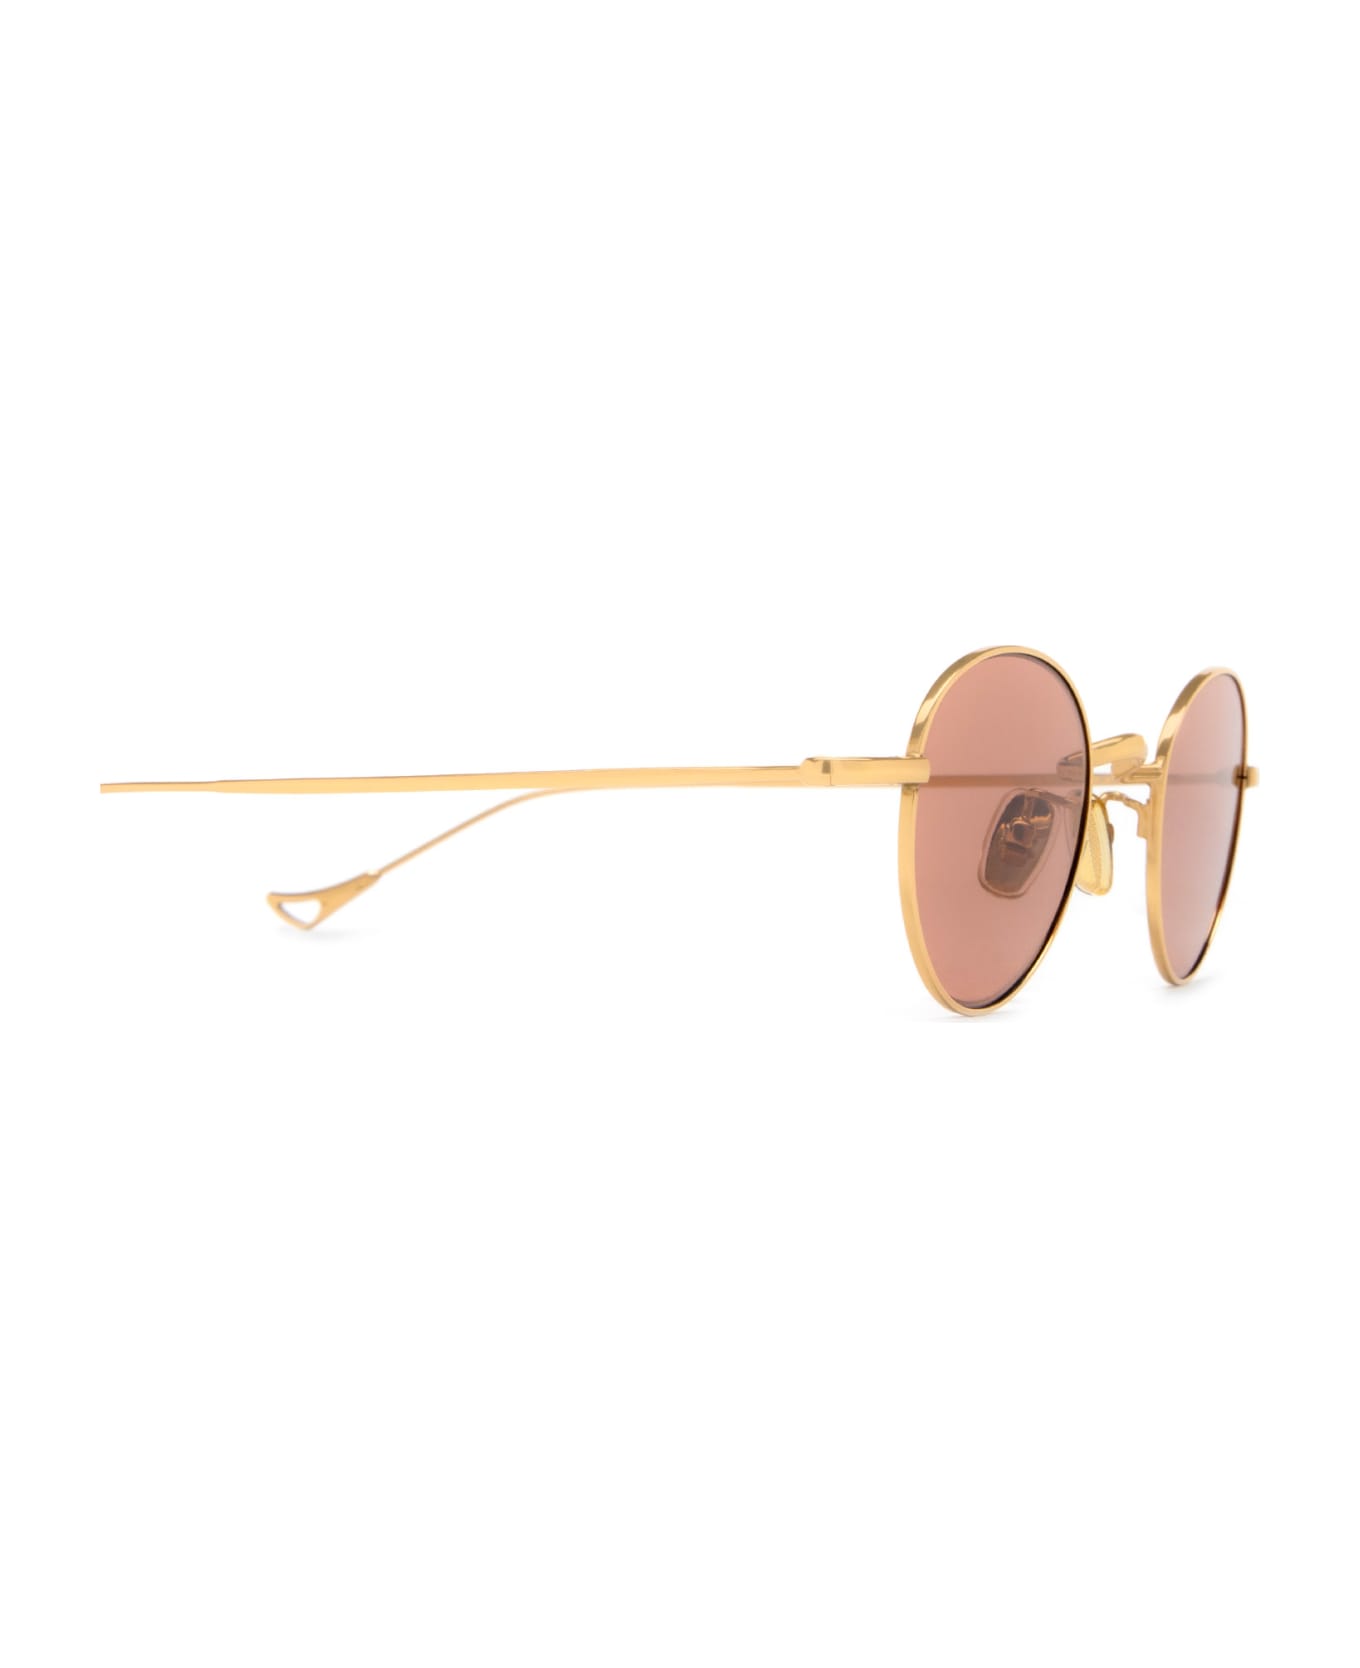 Eyepetizer Clint Gold Sunglasses - Gold